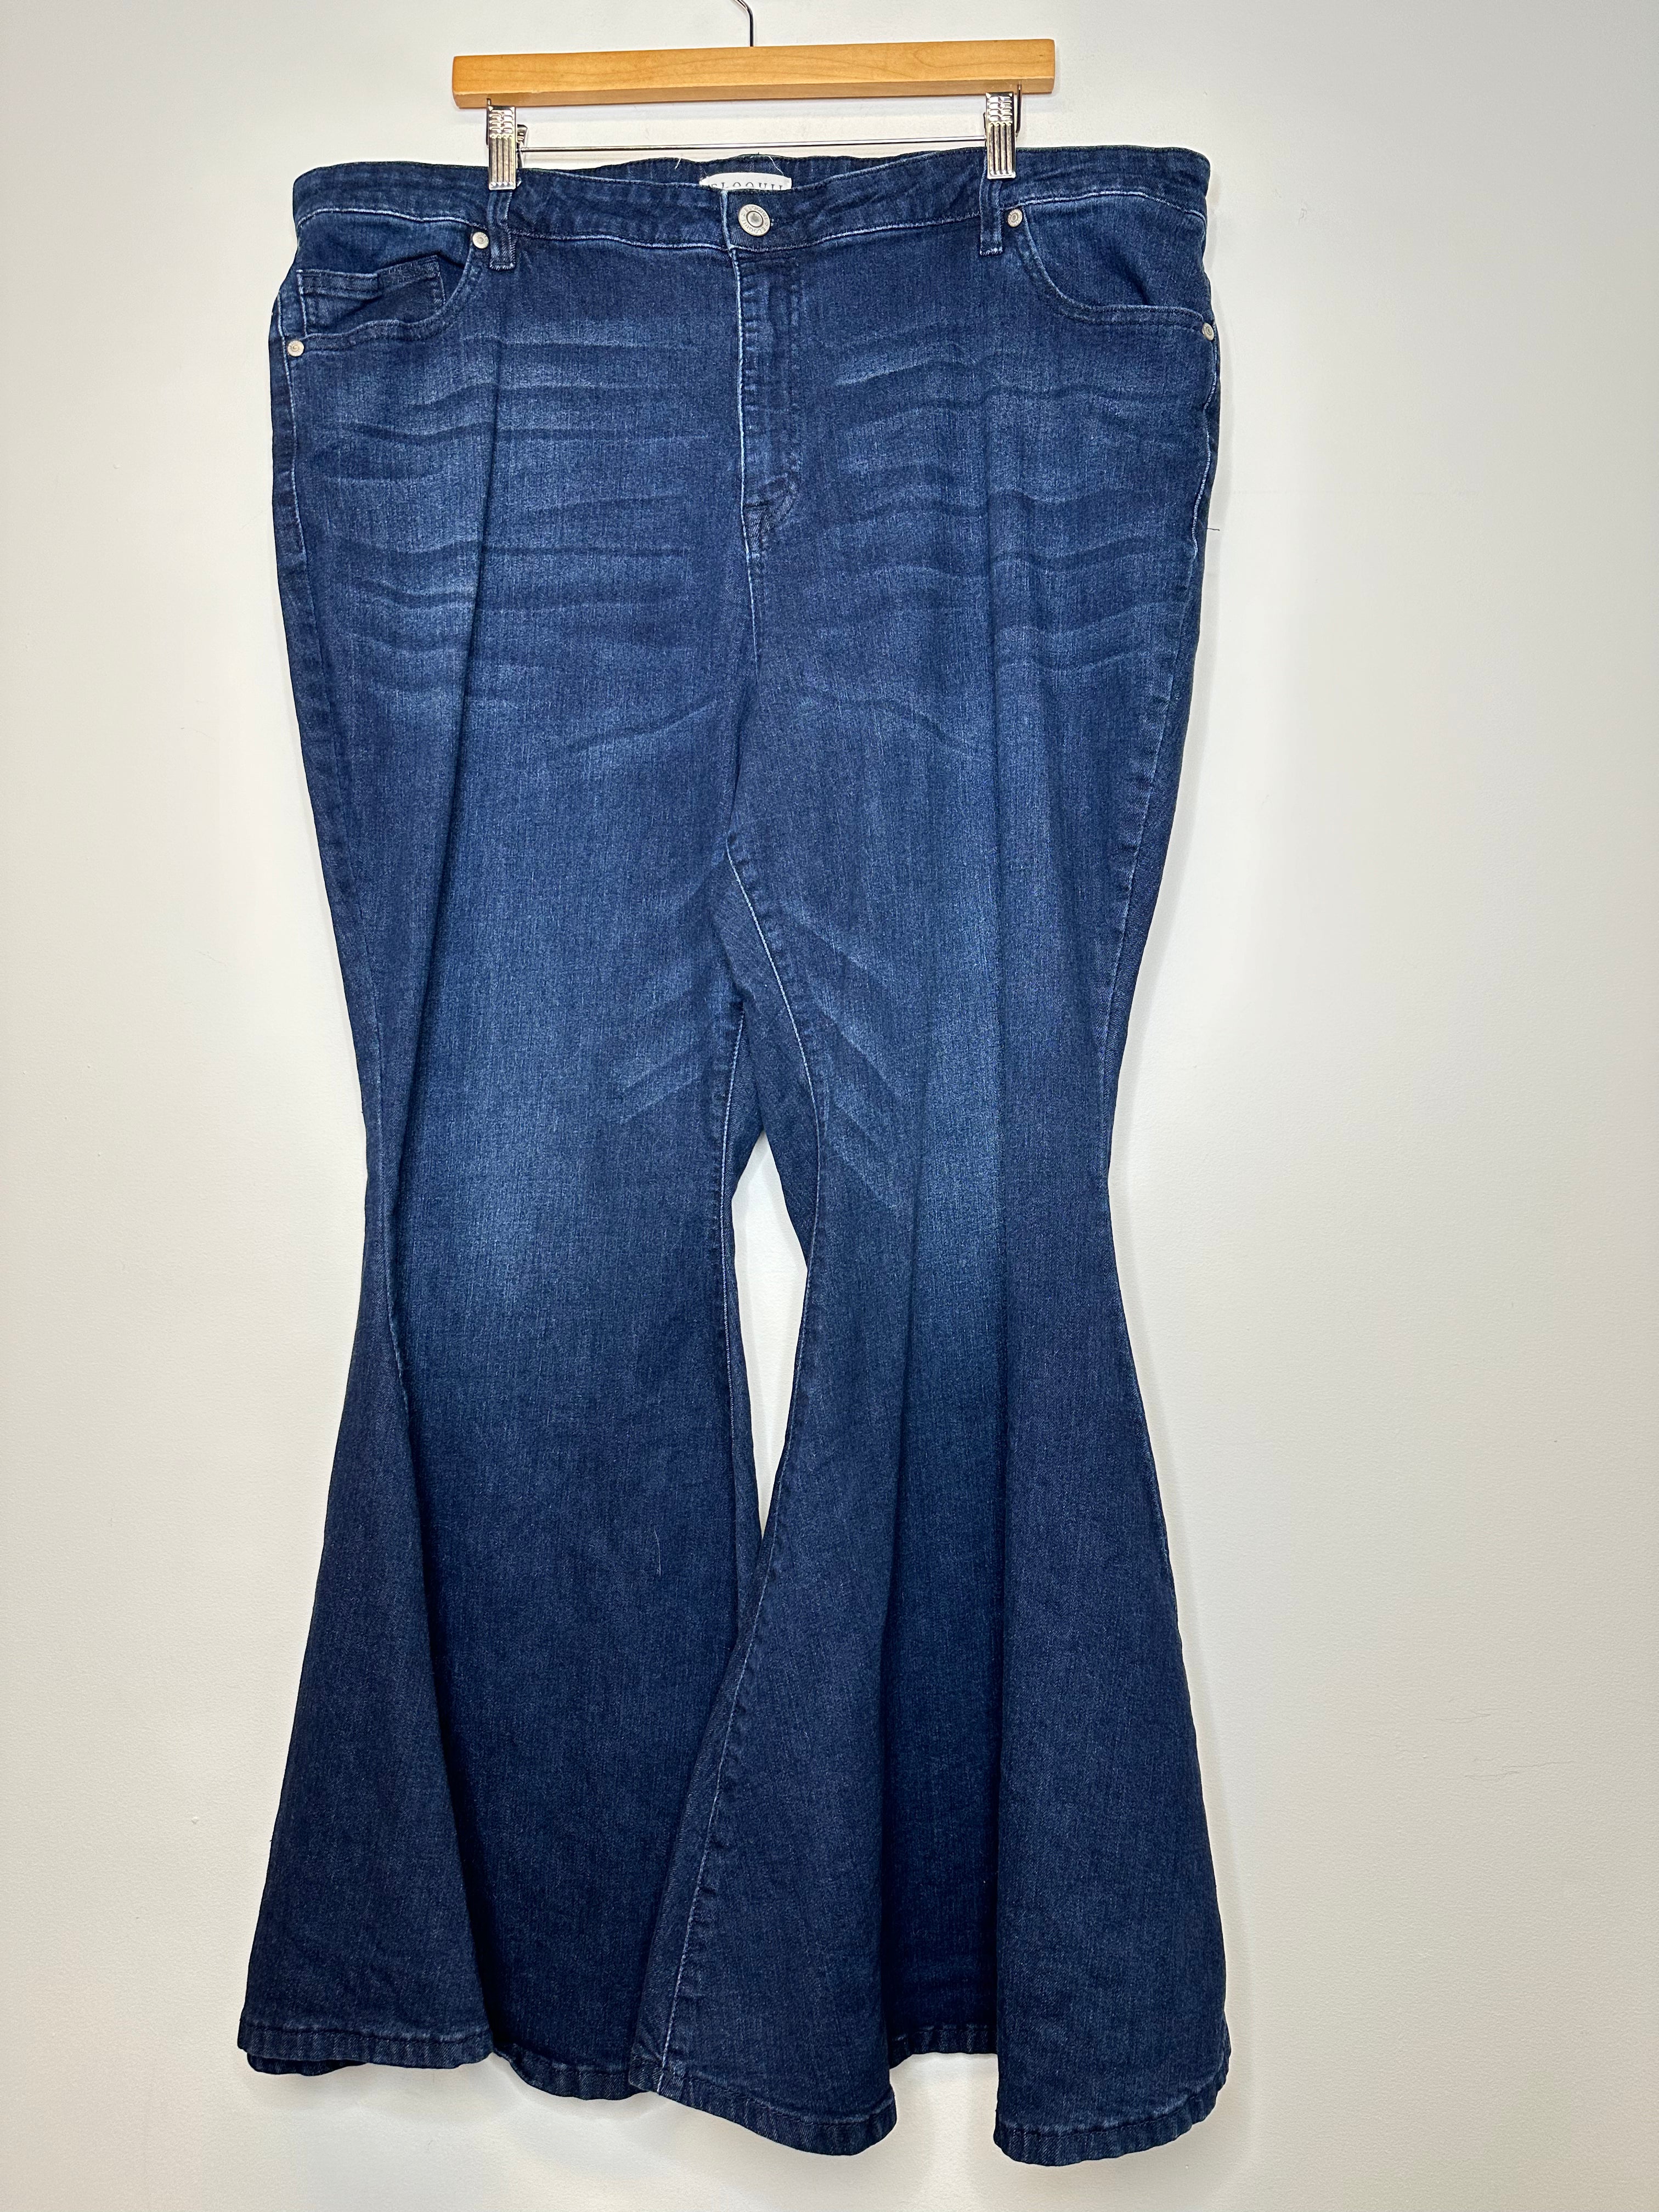 Eloquii Dark Blue Flare Jeans - 48